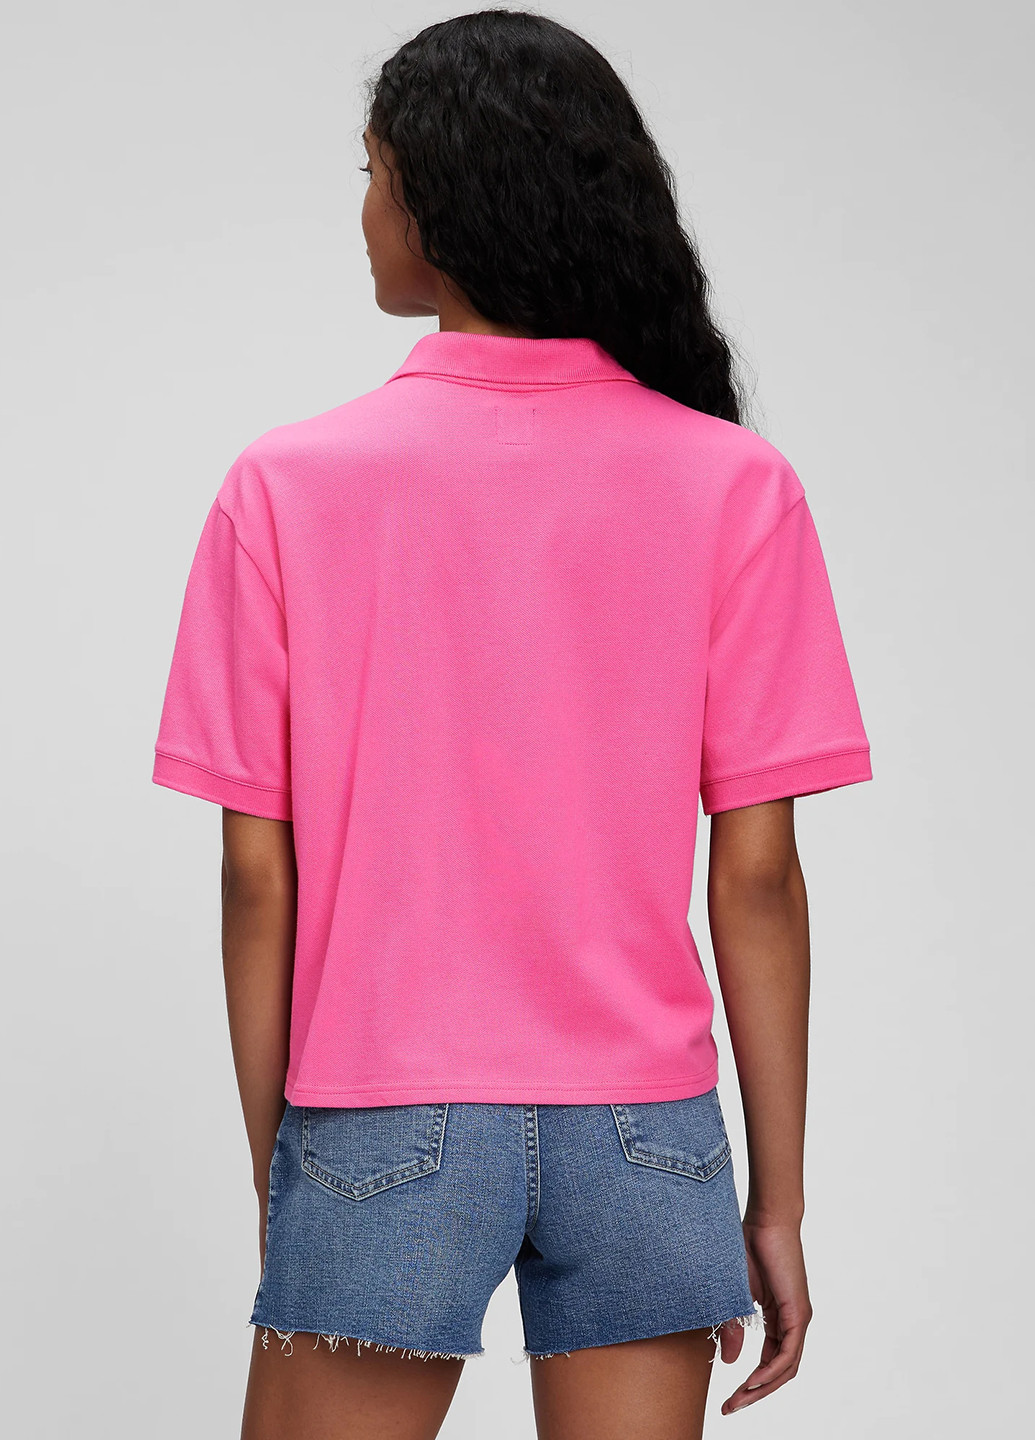 Розовая женская футболка-поло Gap однотонная